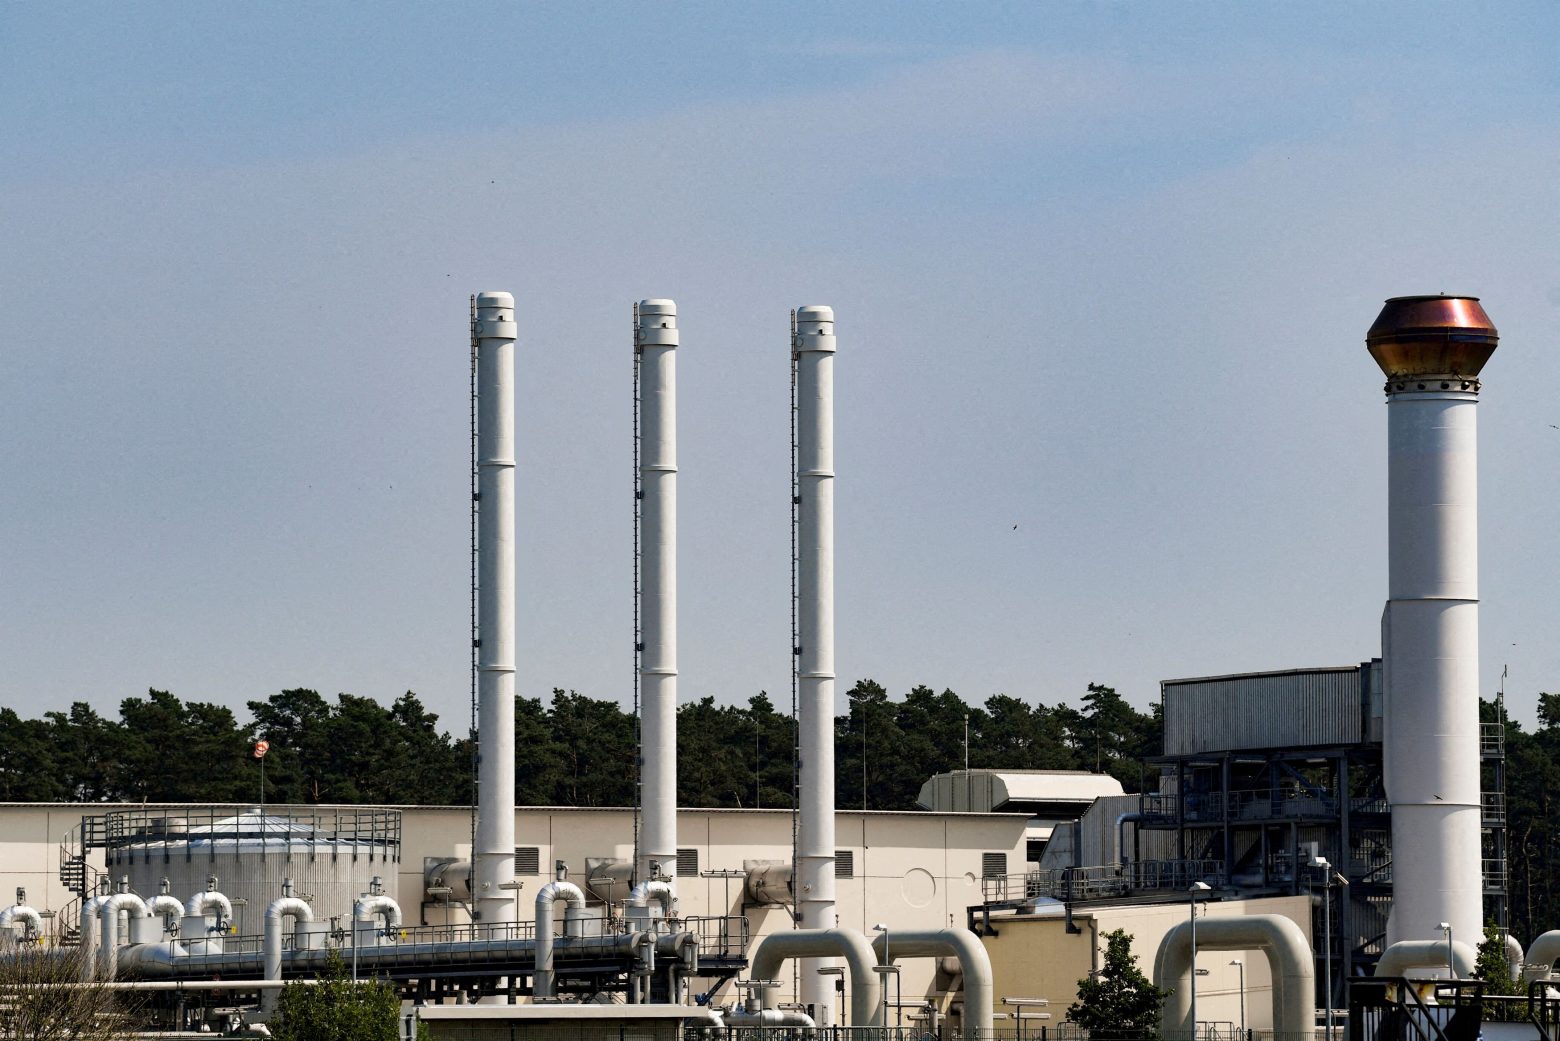 Νord Stream 1: Δεν επιβεβαιώνει, για την ώρα, την ανακοίνωση της Gazprom η Siemens Energy